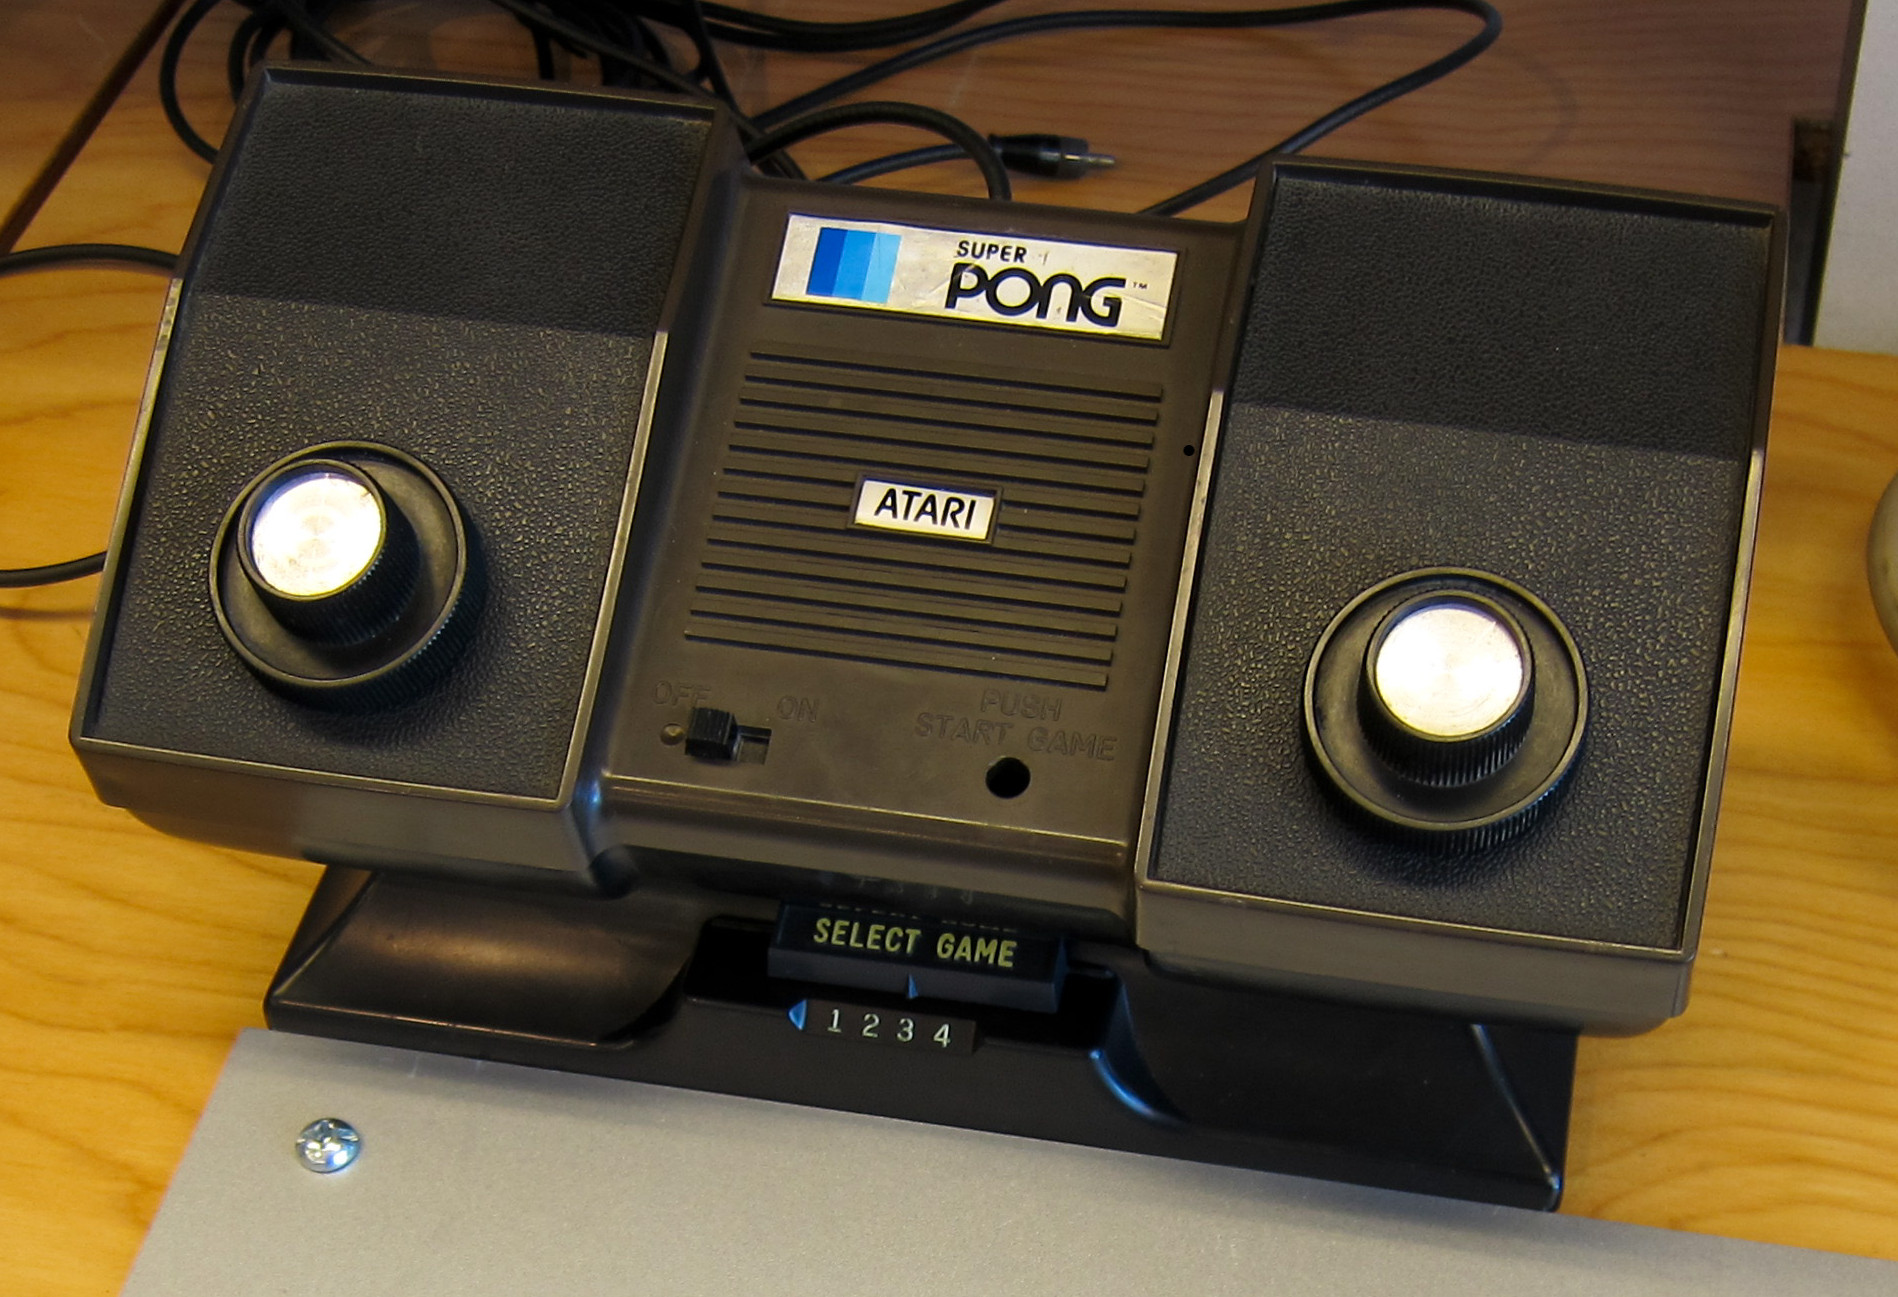 2. Pong Atari Игровые приставки, игры, компьютеры, технологии